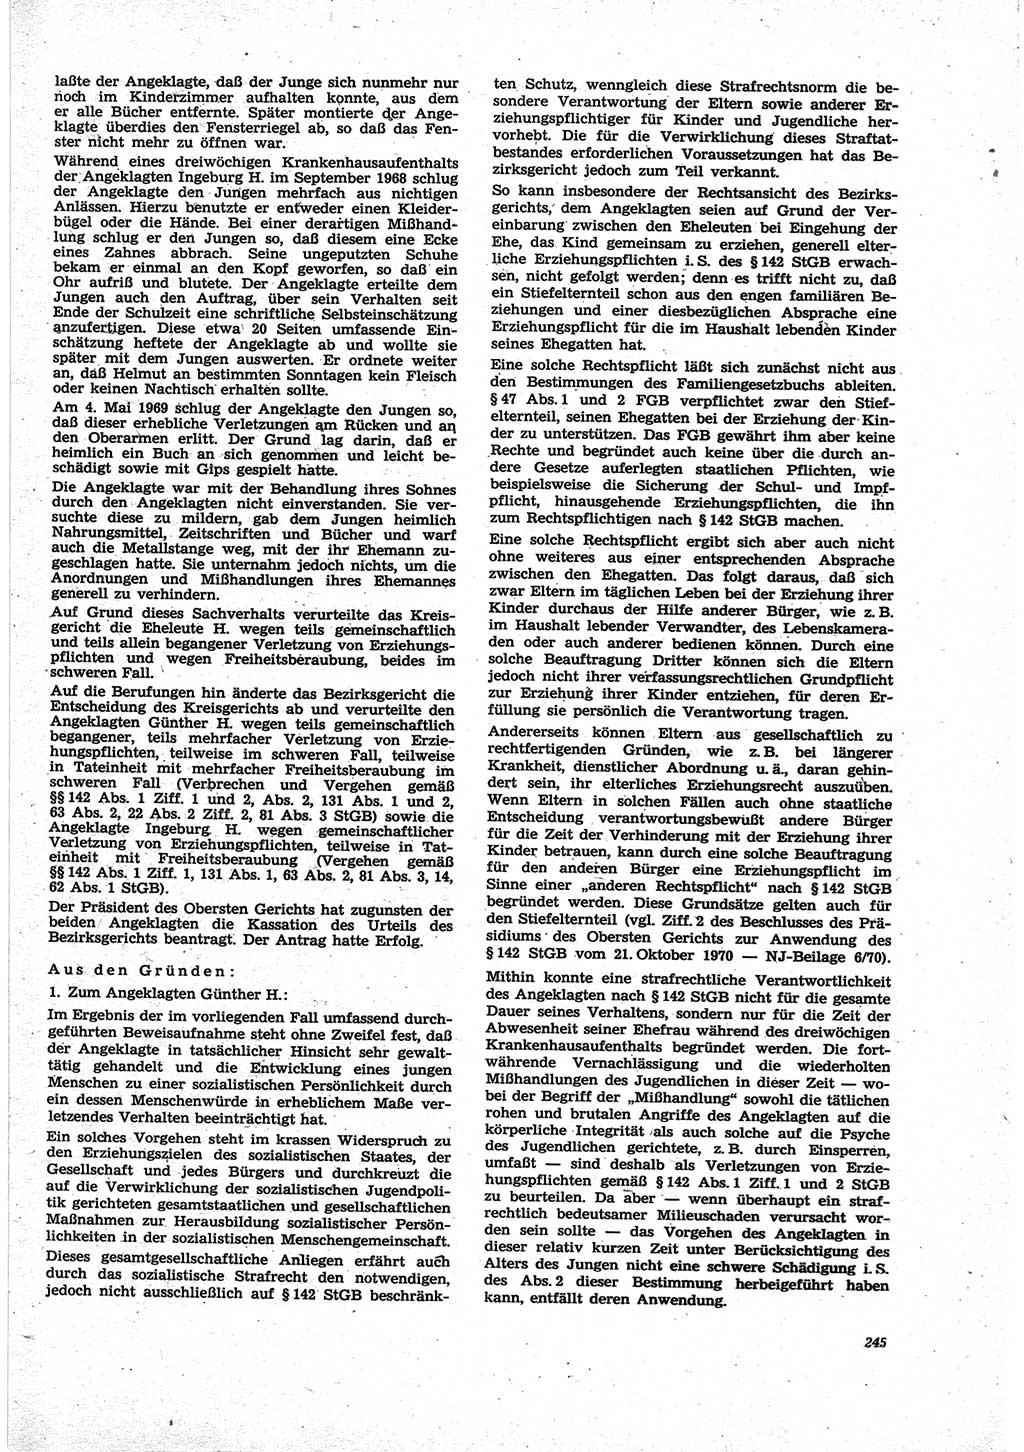 Neue Justiz (NJ), Zeitschrift für Recht und Rechtswissenschaft [Deutsche Demokratische Republik (DDR)], 25. Jahrgang 1971, Seite 245 (NJ DDR 1971, S. 245)